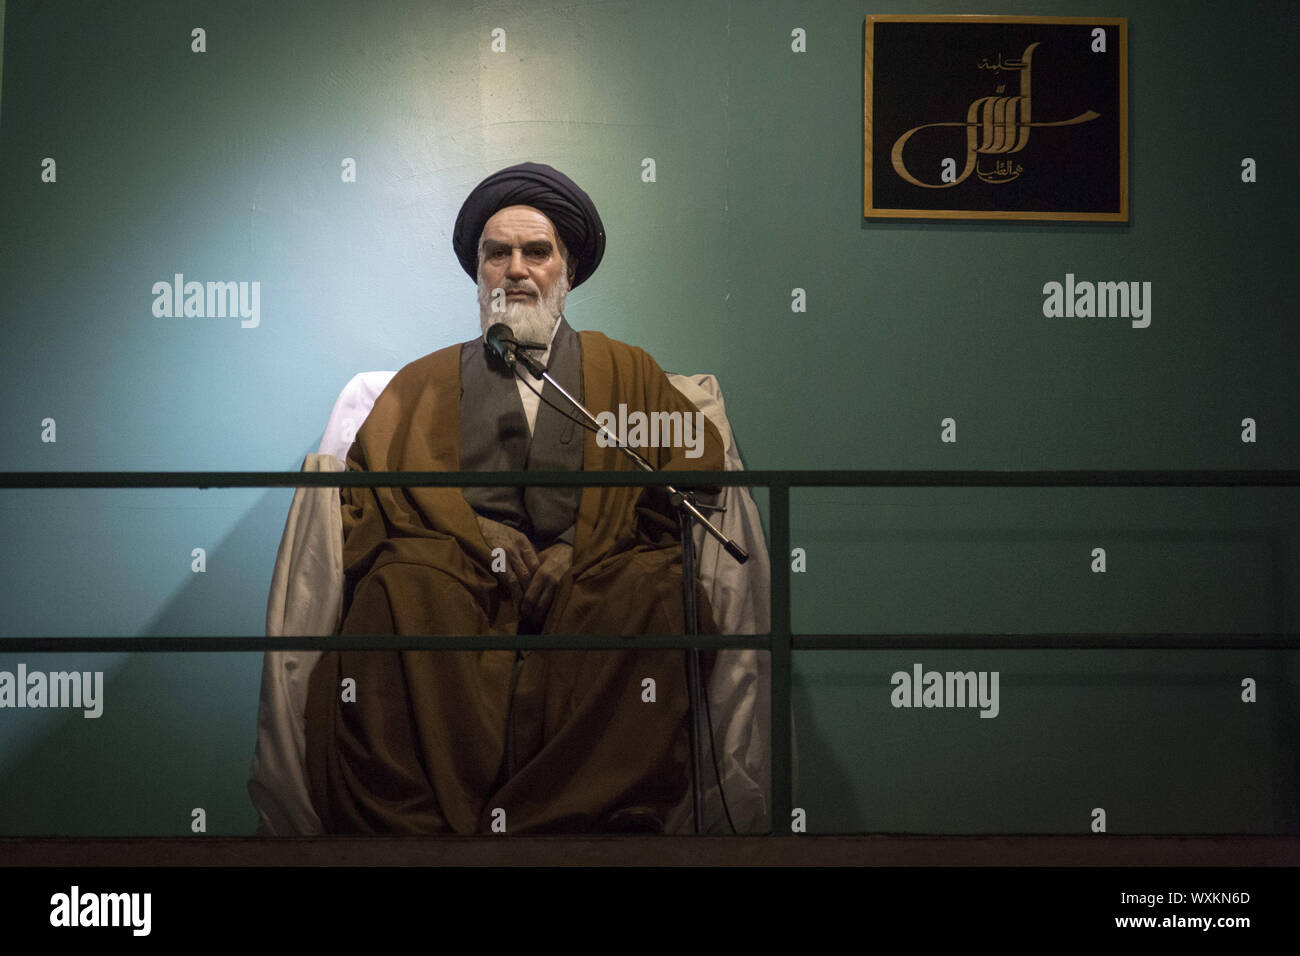 16 septembre 2019, Téhéran, Iran : Statue de Rouhollah Khomeini, ancien chef suprême de l'Iran est vu à la défense Saint Museum (Musée de la guerre) dans la capitale Téhéran. Le musée présente des éléments de la guerre Iran-Irak 1980-1988 qui a été la plus longue guerre conventionnelle de 20e siècle et a été officiellement lancé le 22 septembre 1980, lorsque les forces armées iraquiennes ont envahi l'ouest de l'Iran et s'est terminé le 20 août 1988, lorsque la République islamique d'Iran a accepté la résolution de cessez-le-feu des Nations Unies 598. Huit années de guerre avec l'Irak est connue comme la Sainte défense nationale en Iran. (Crédit Image : © Rouzbeh Fouladi/Zuma sur le fil) Banque D'Images